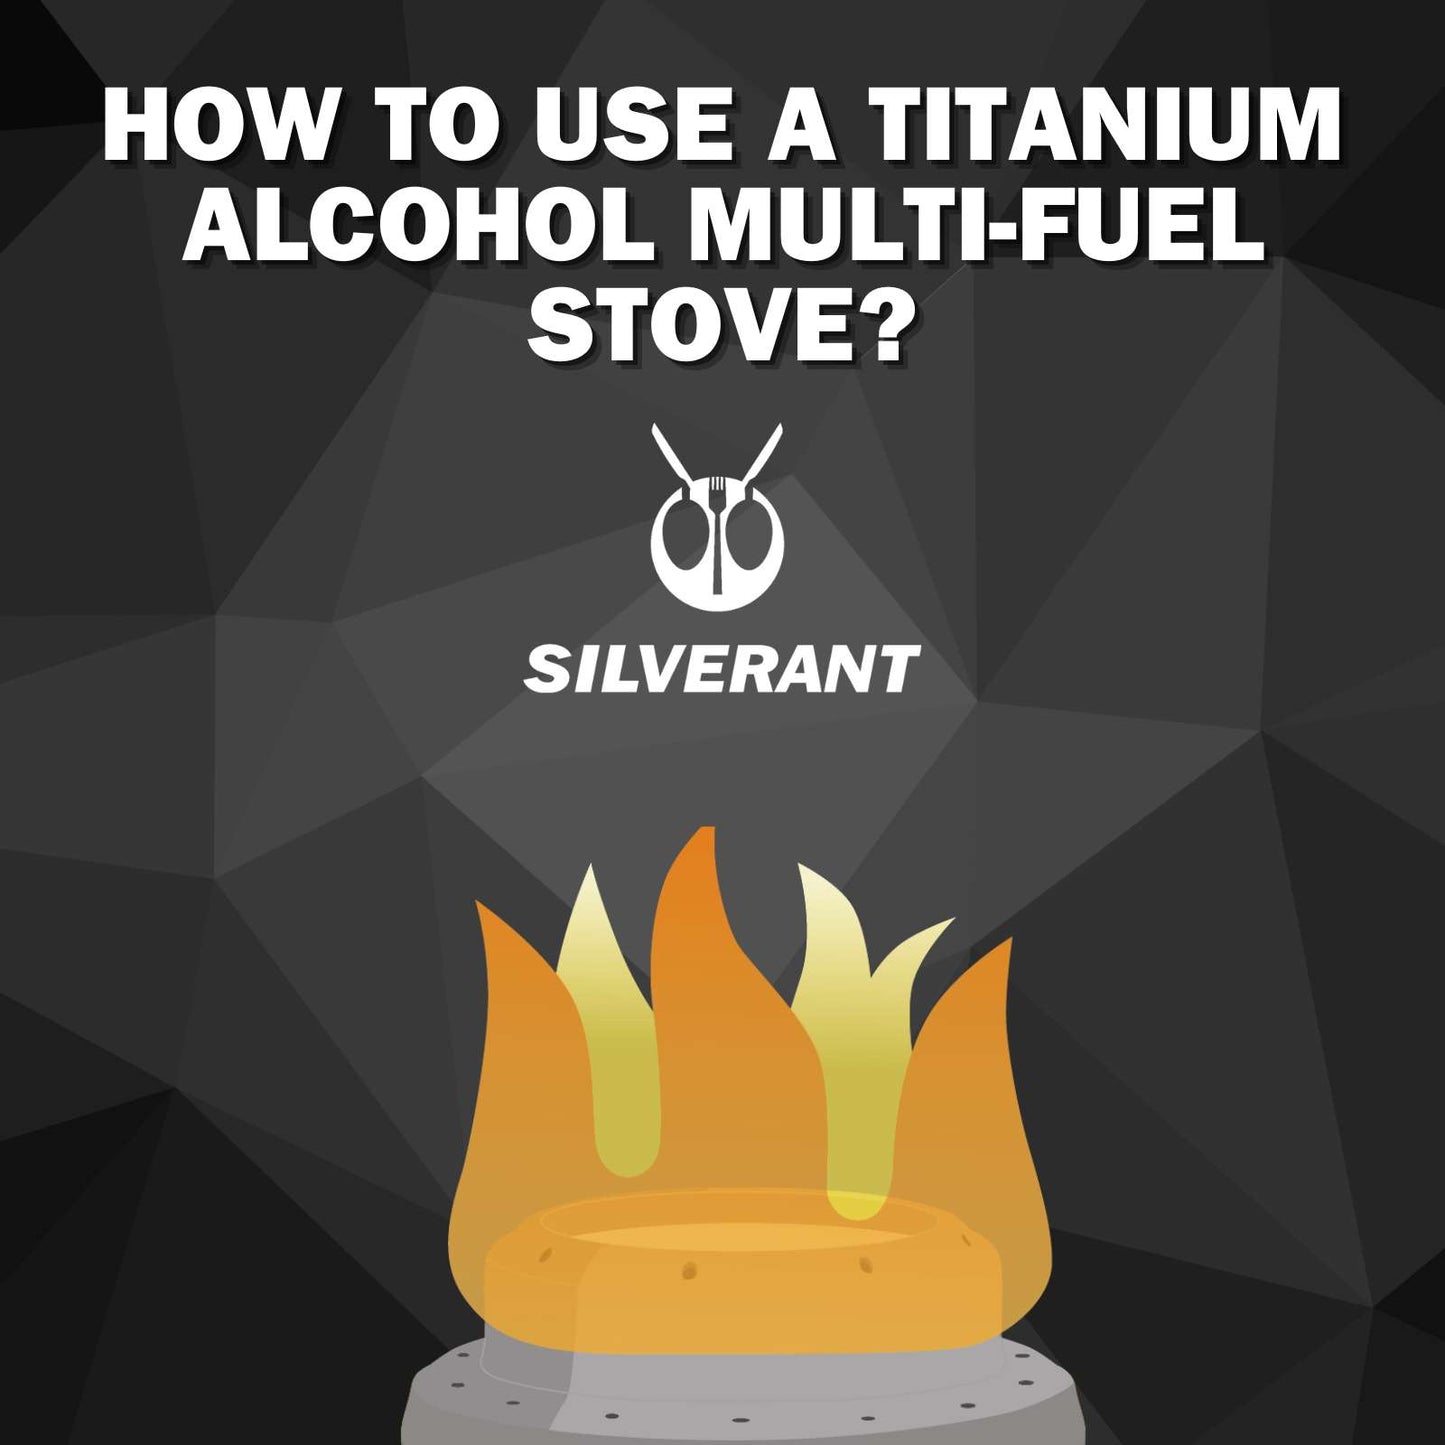 How To Use A Titanium Alcohol Multi-fuel Stove?